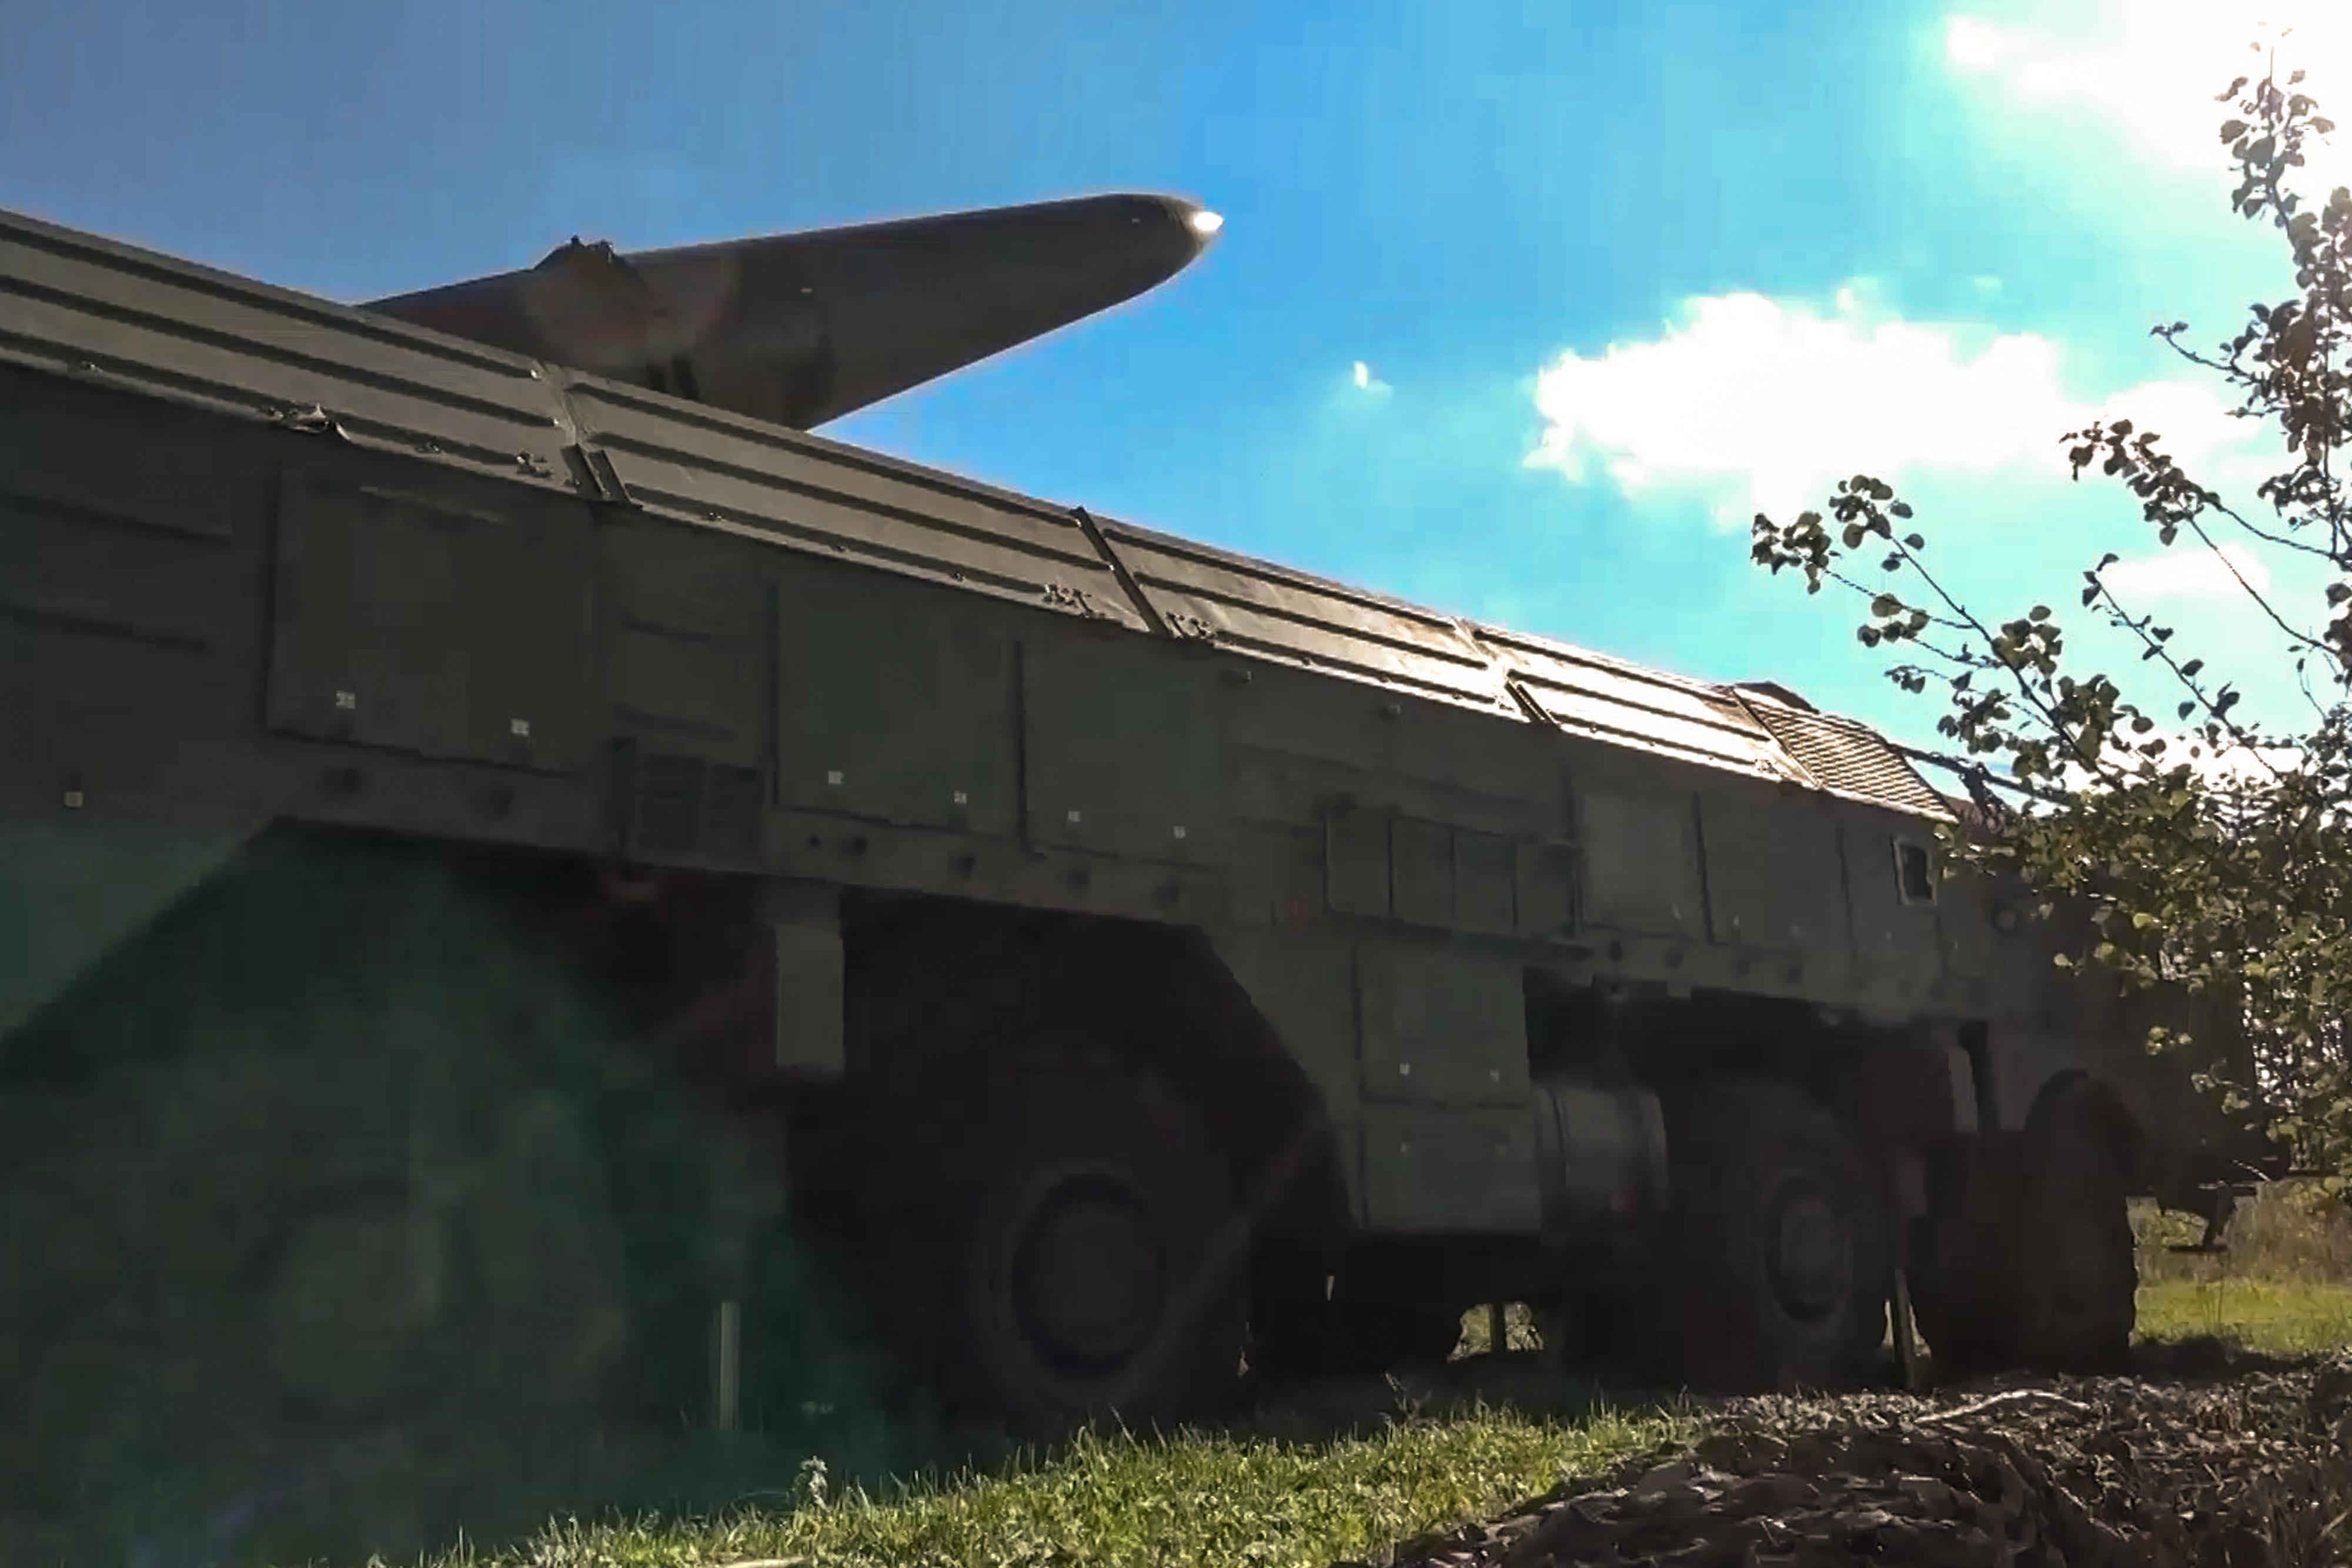 Russia - al via seconda fase esercitazioni forze nucleari con Bielorussia